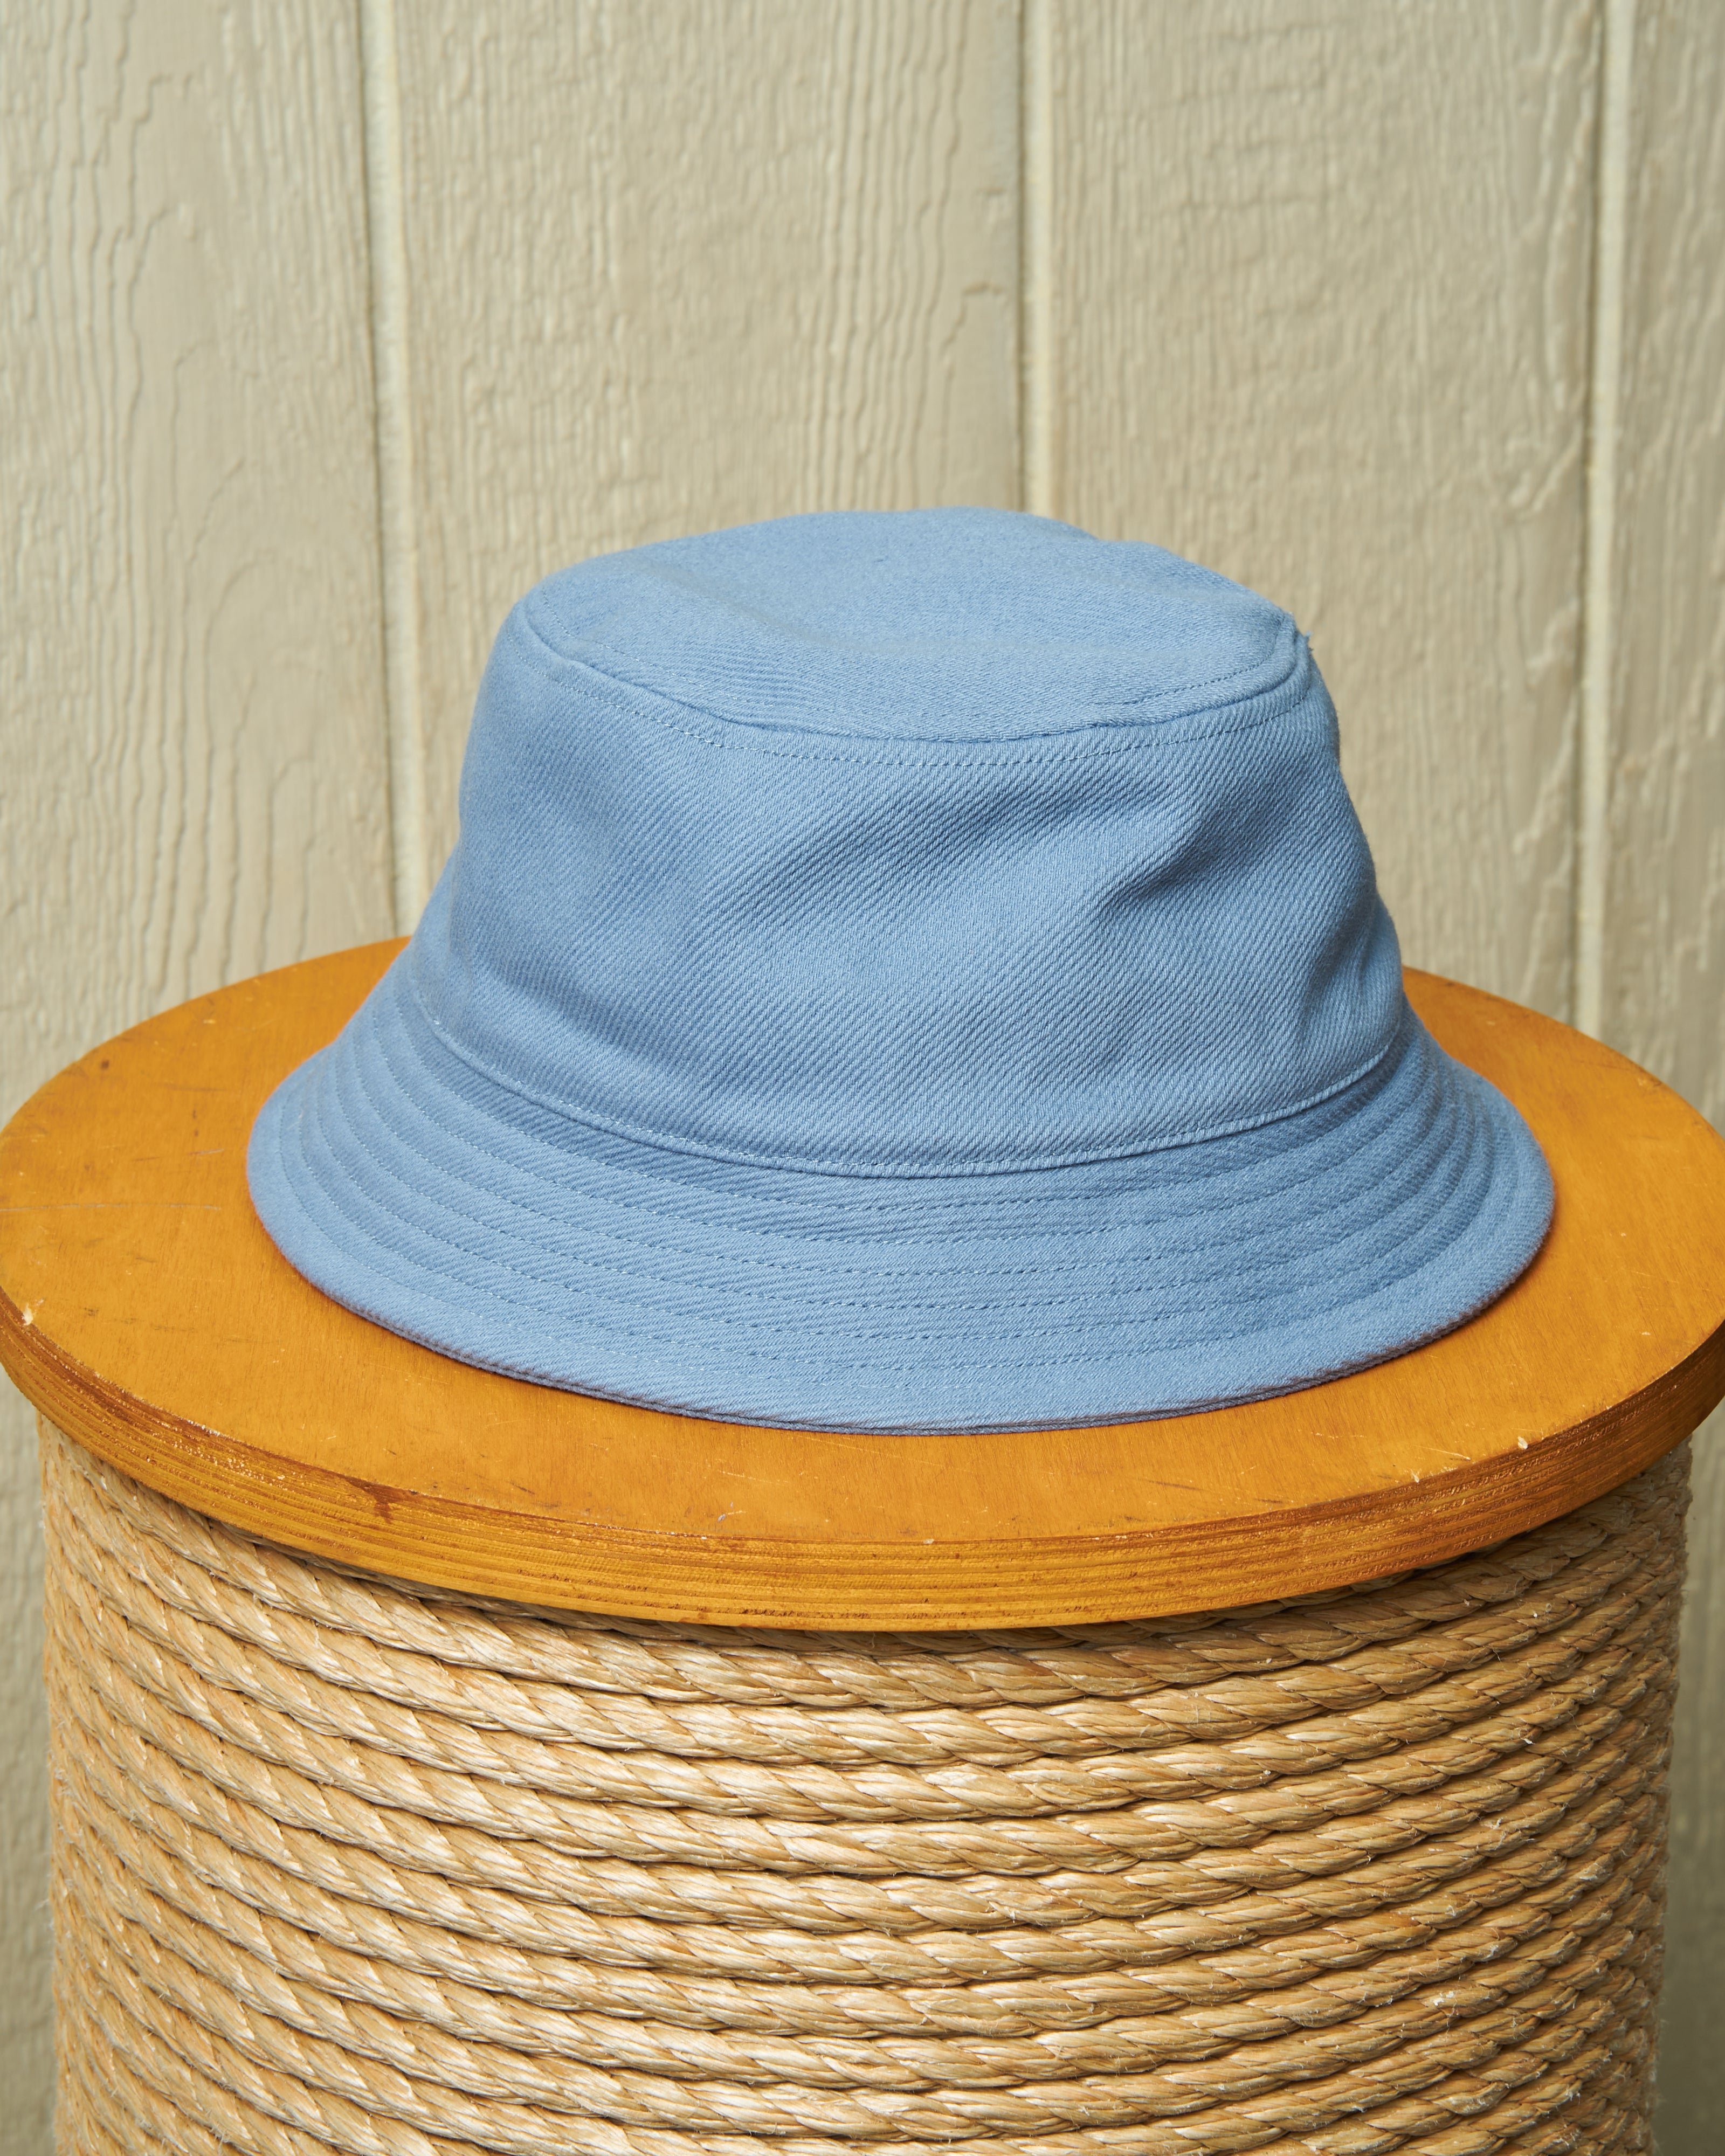 Classic Bucket Hat in Atlantic Quaker Blue – Marine Supply